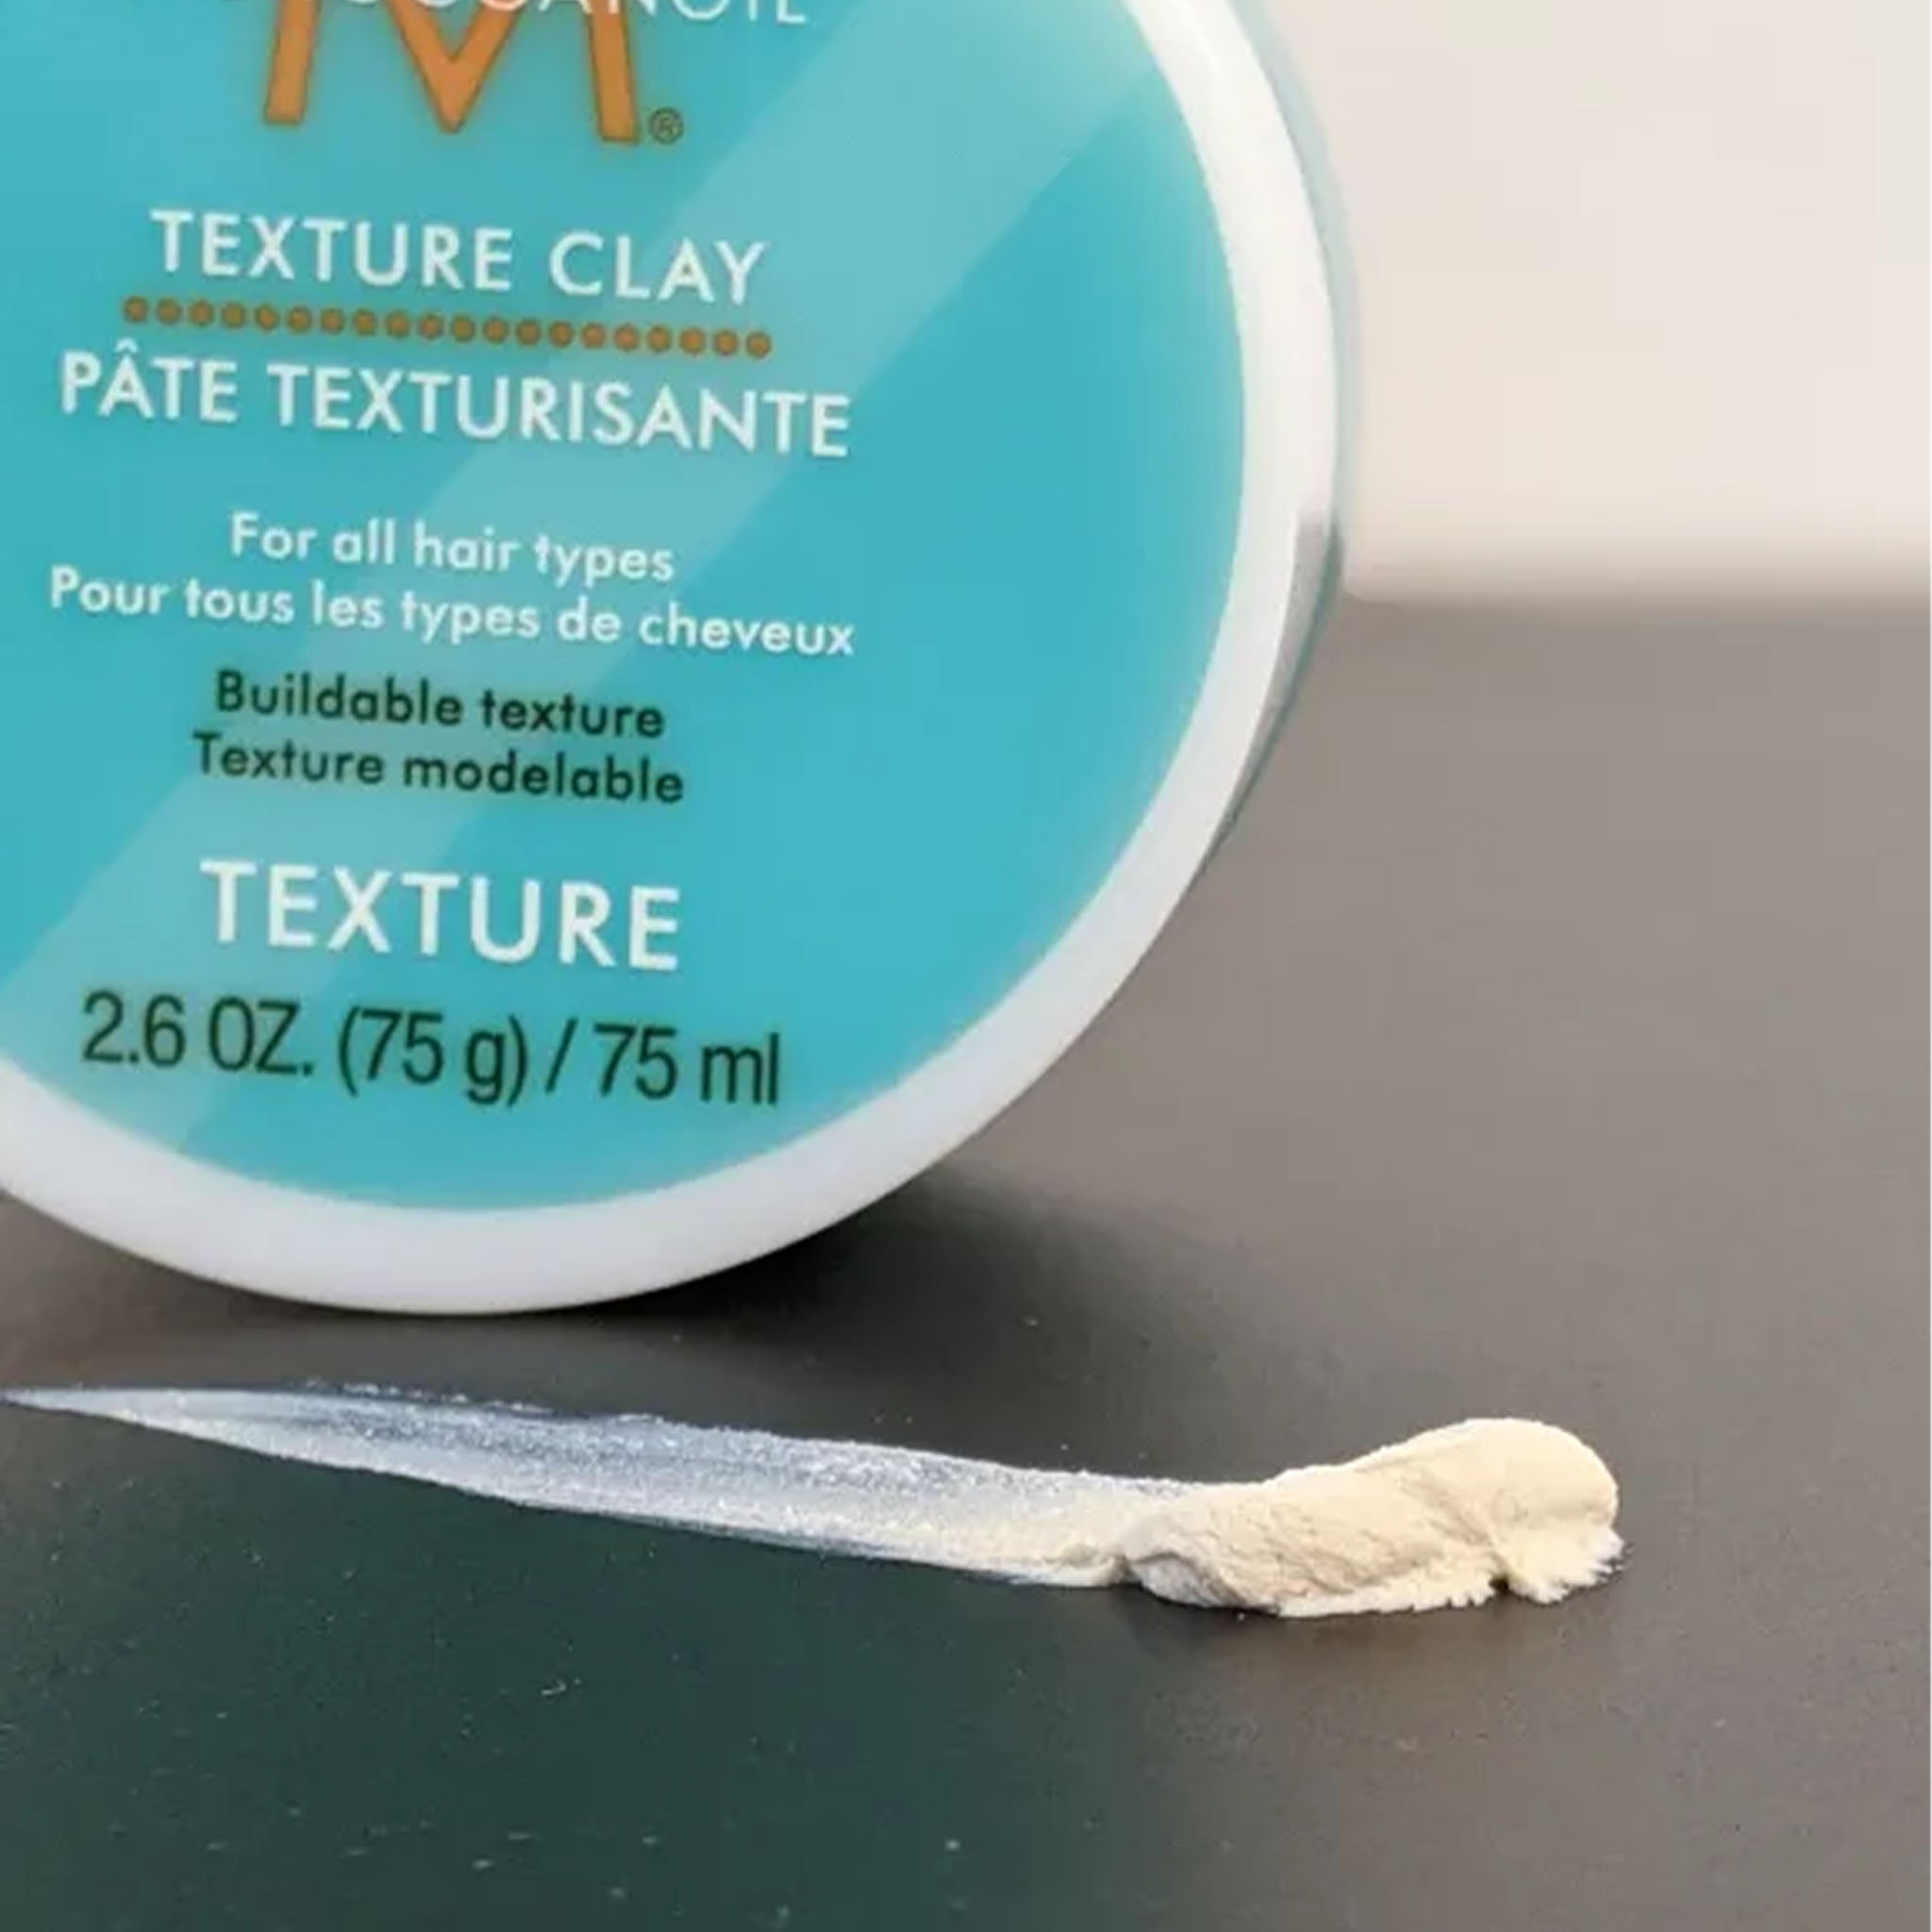 Moroccanoil. Pâte Texturisante Texture - 75 ml - Concept C. Shop